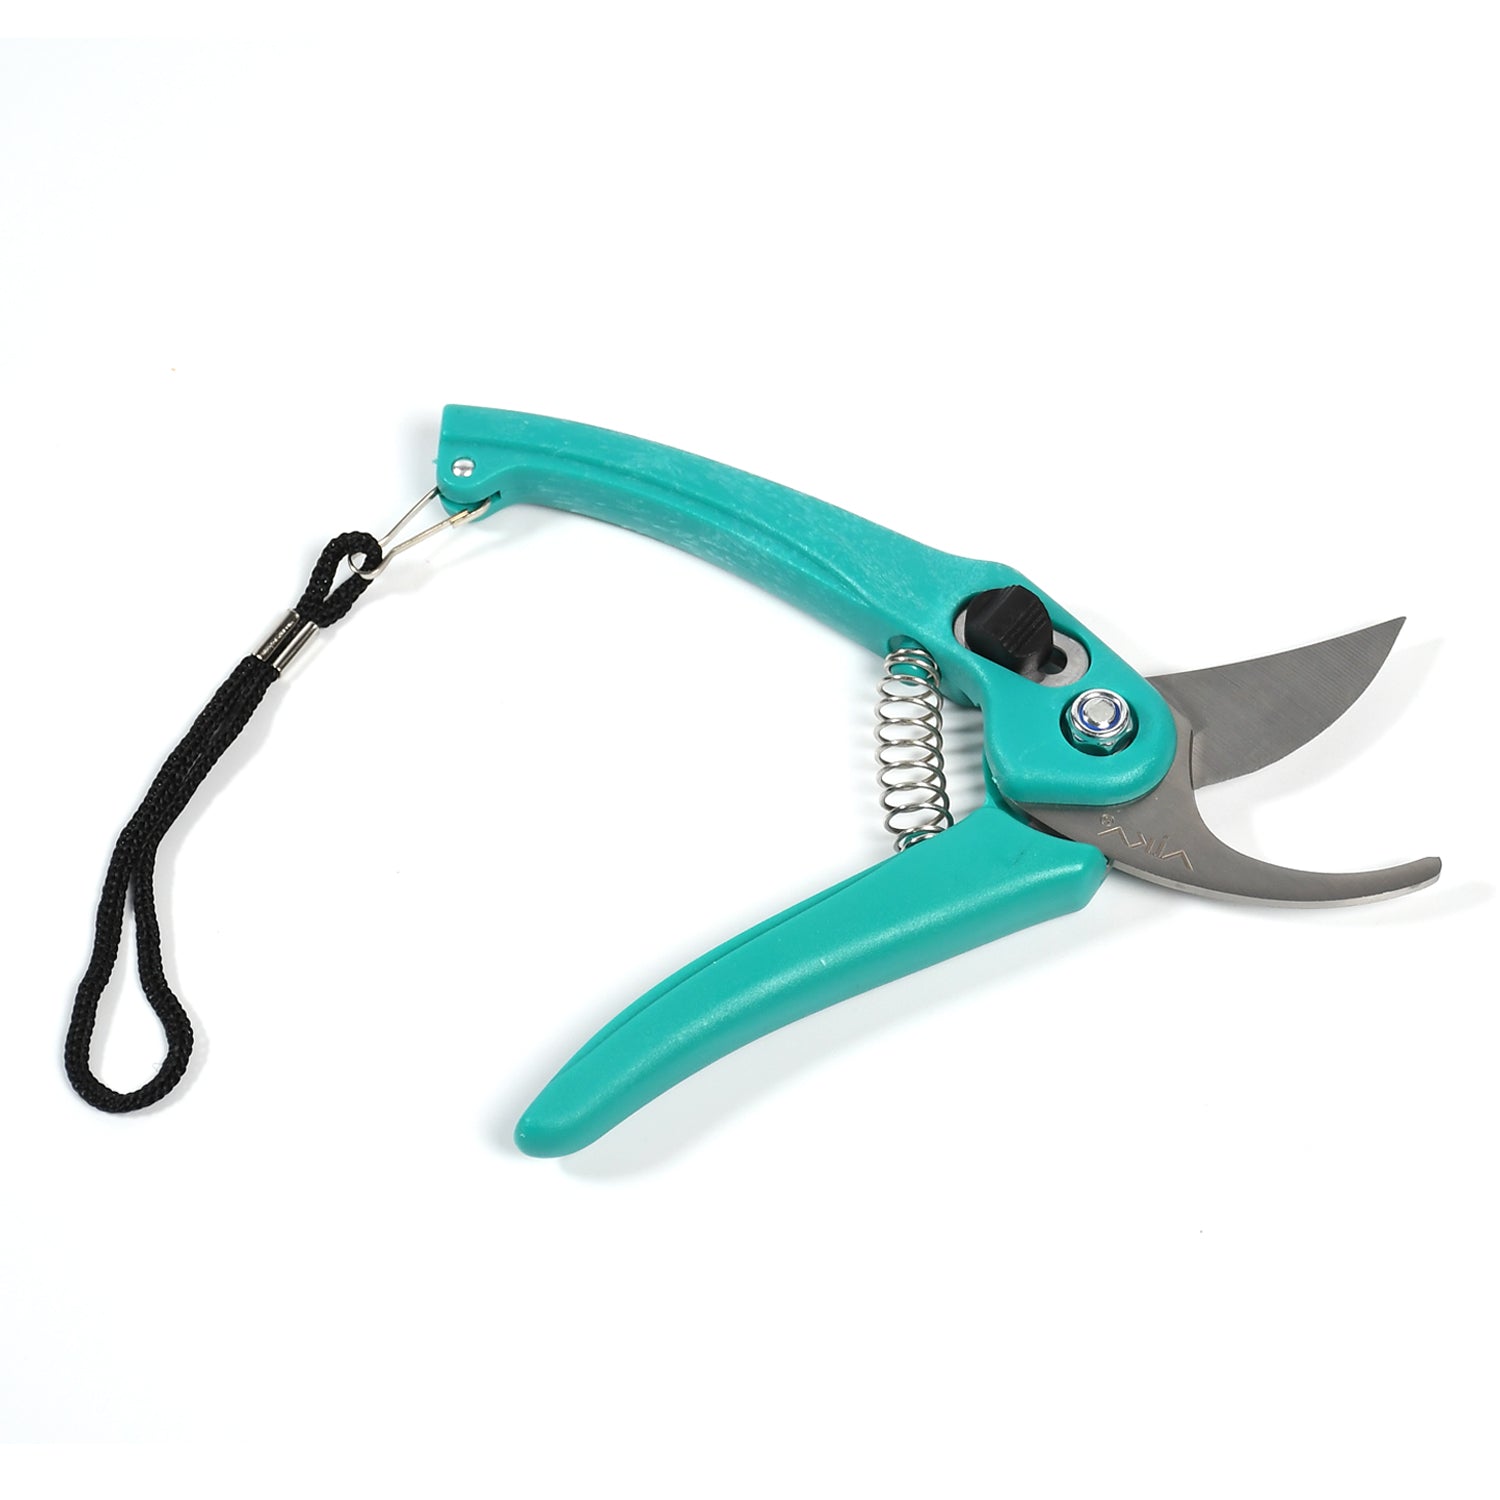 0467 Heavy Duty Gardening Cutter Tool Plant Cutter for Home Garden | Wood Branch Trimmer | Grass Cutting Accessories | Sturdy Stem Scissors DeoDap